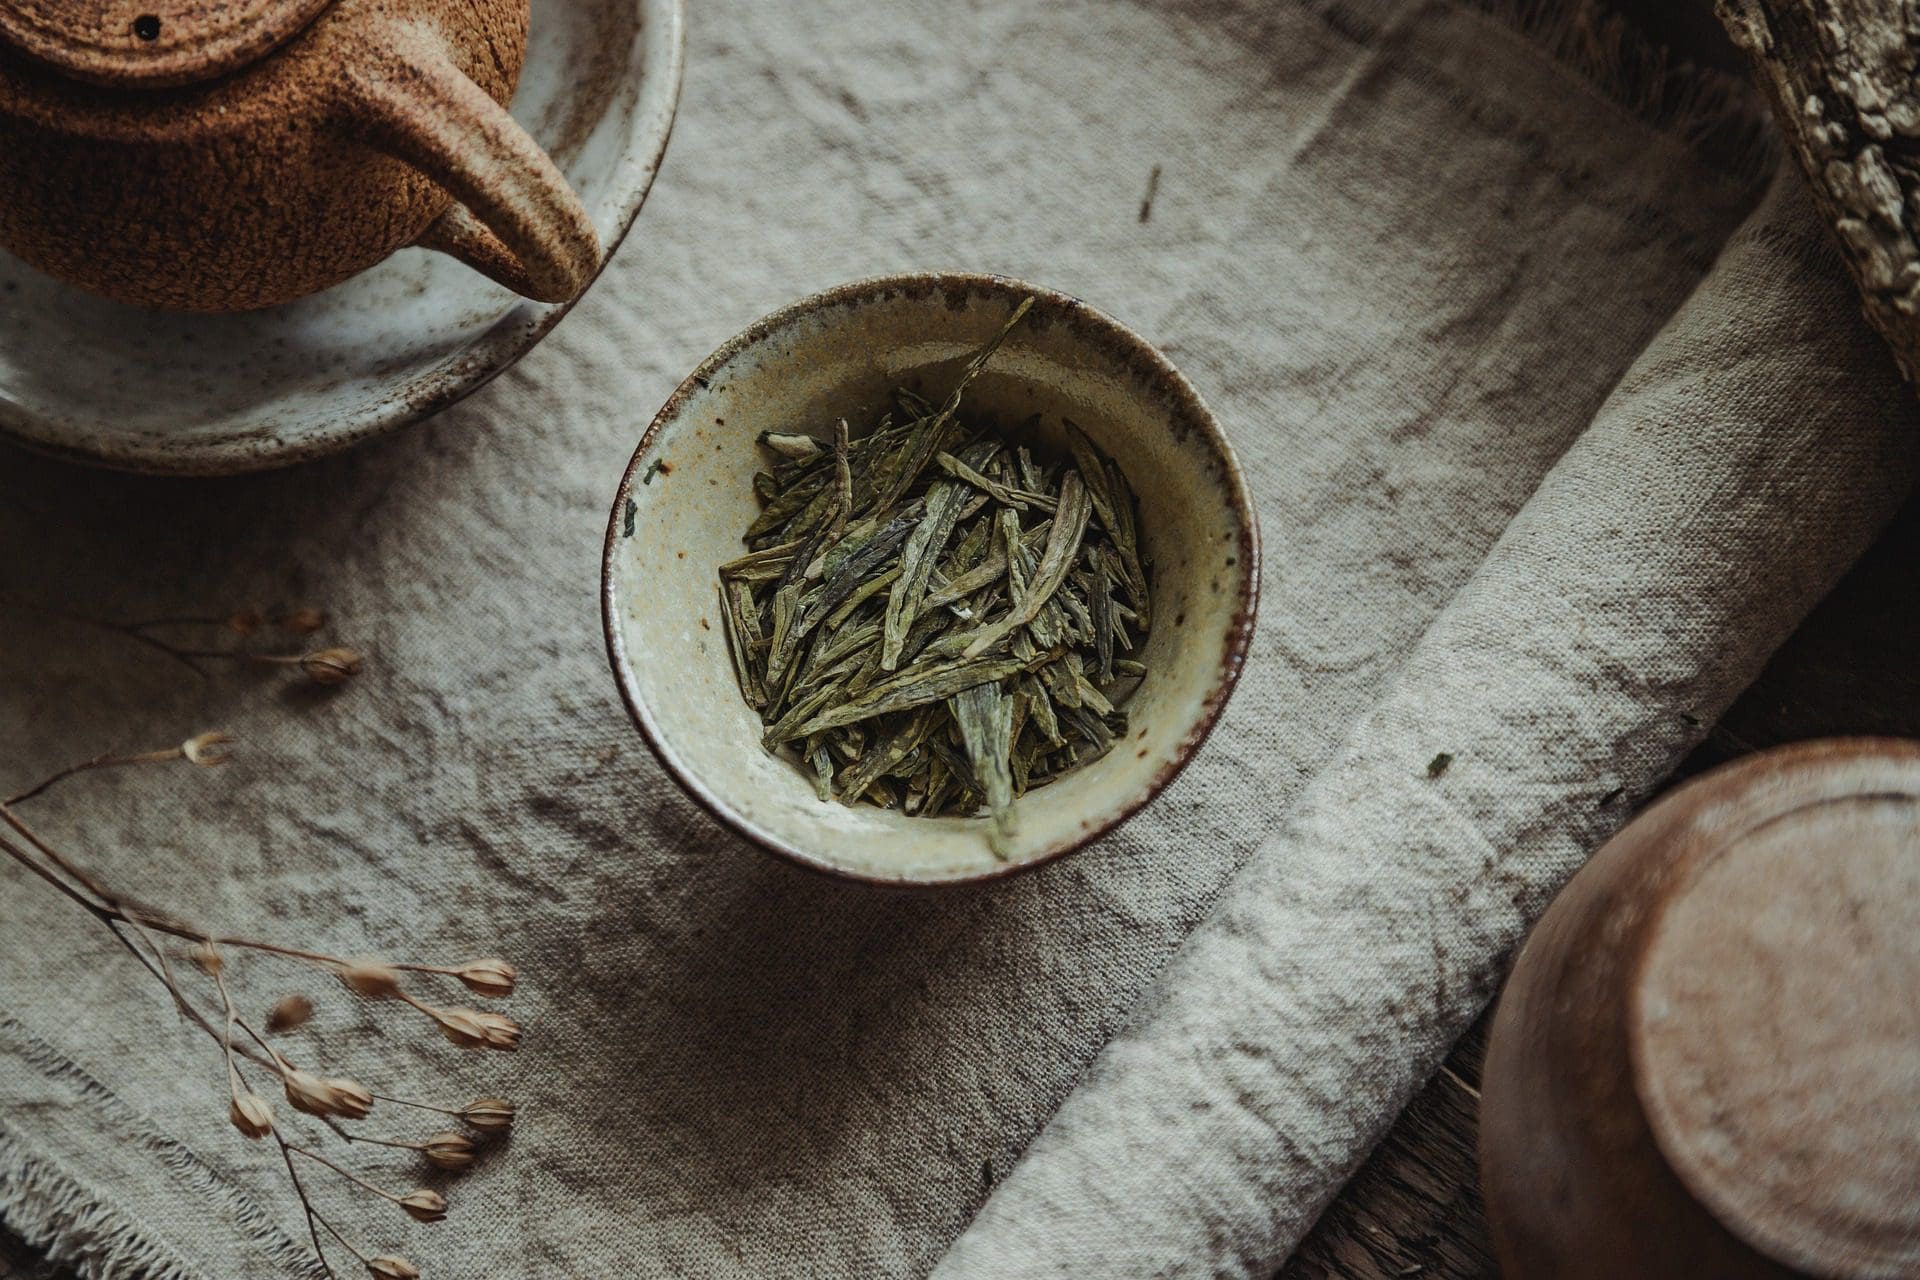 tè verde